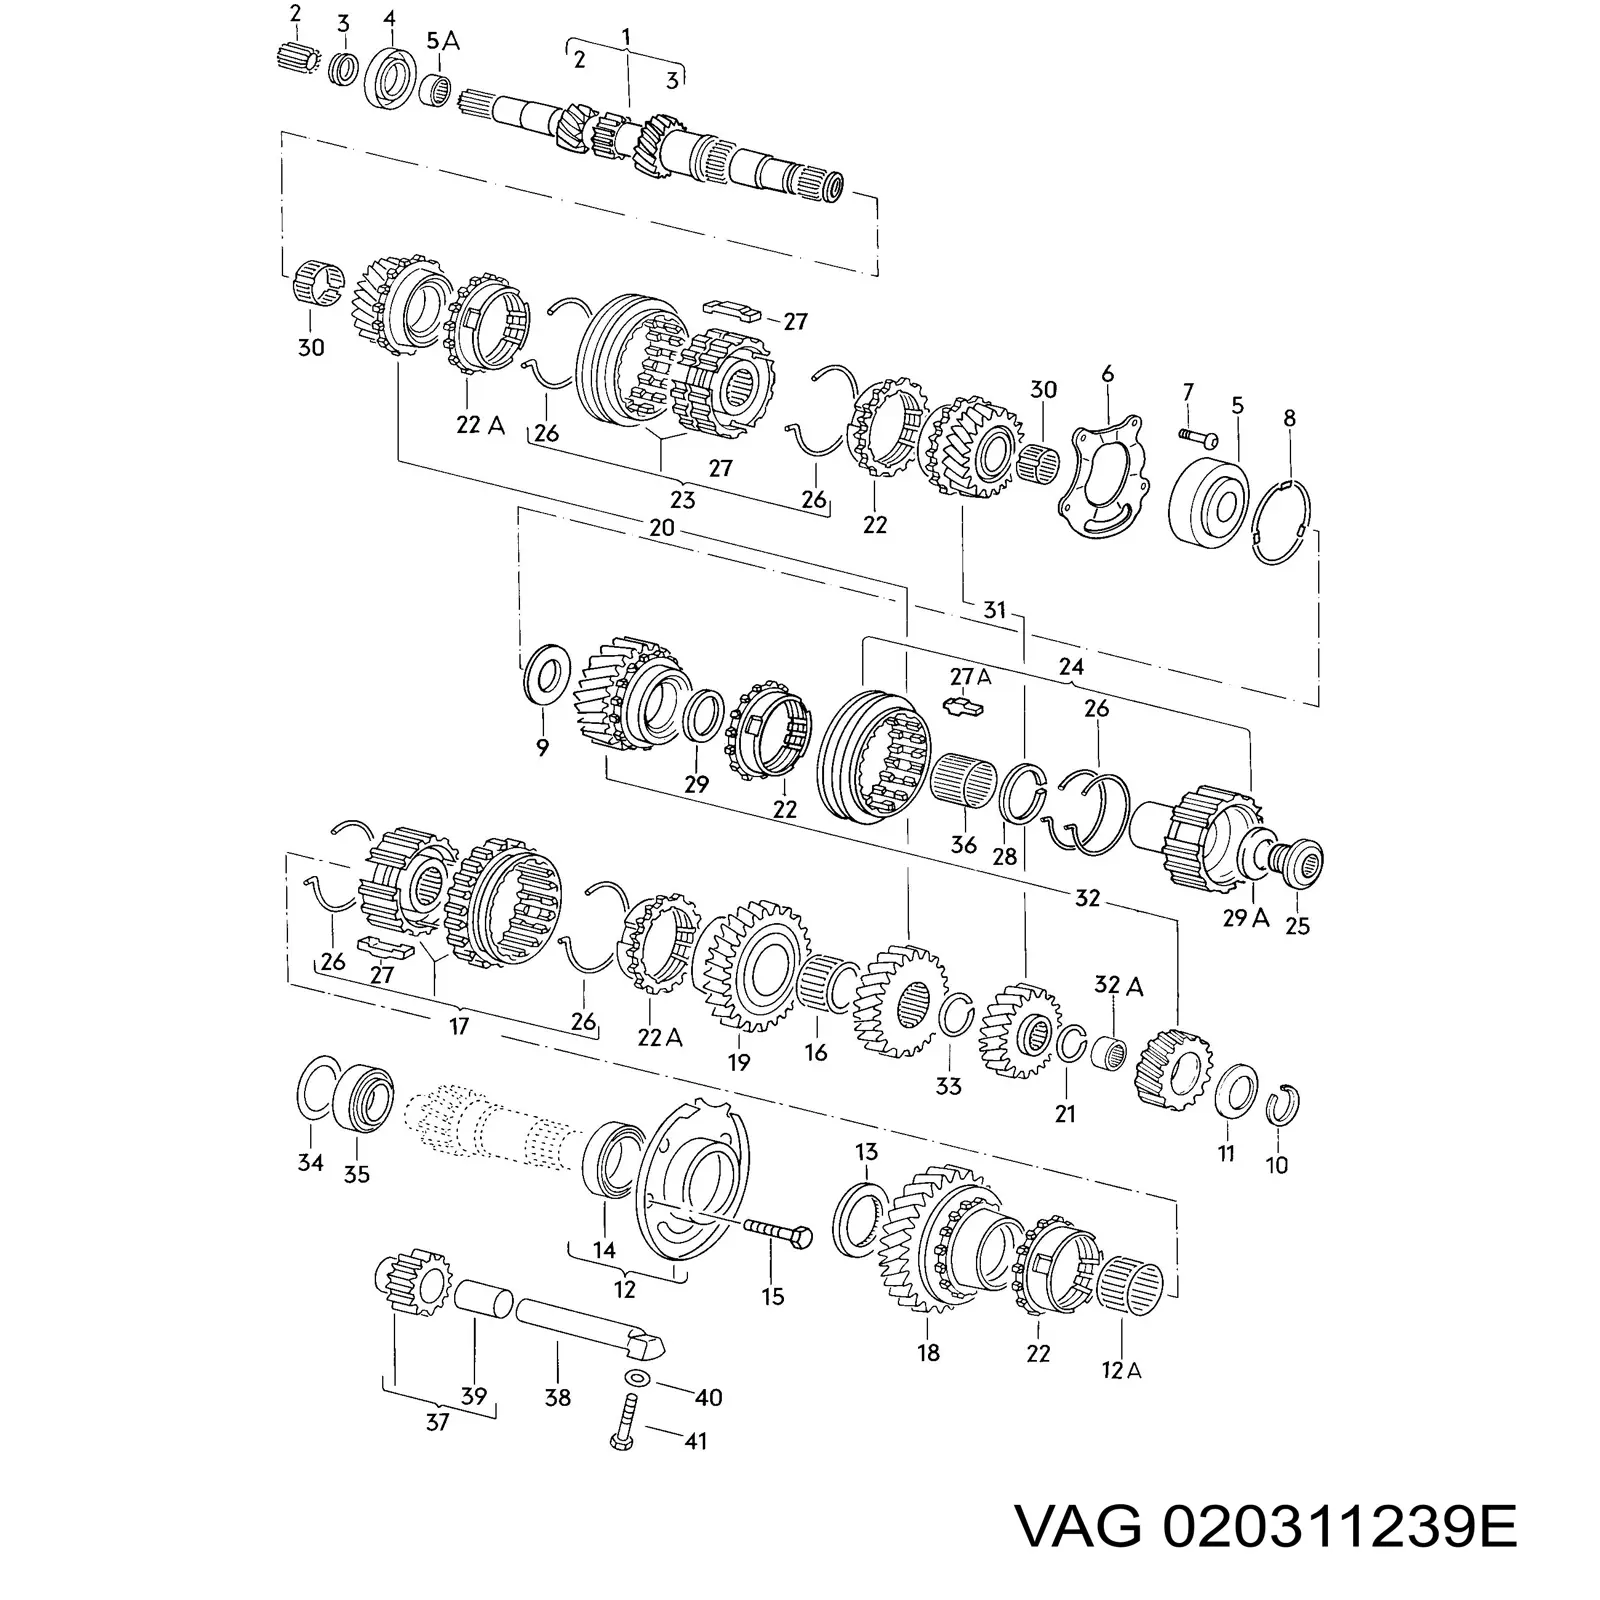 Sincronizador 1 e 2 marcha para Volkswagen Caddy (14)